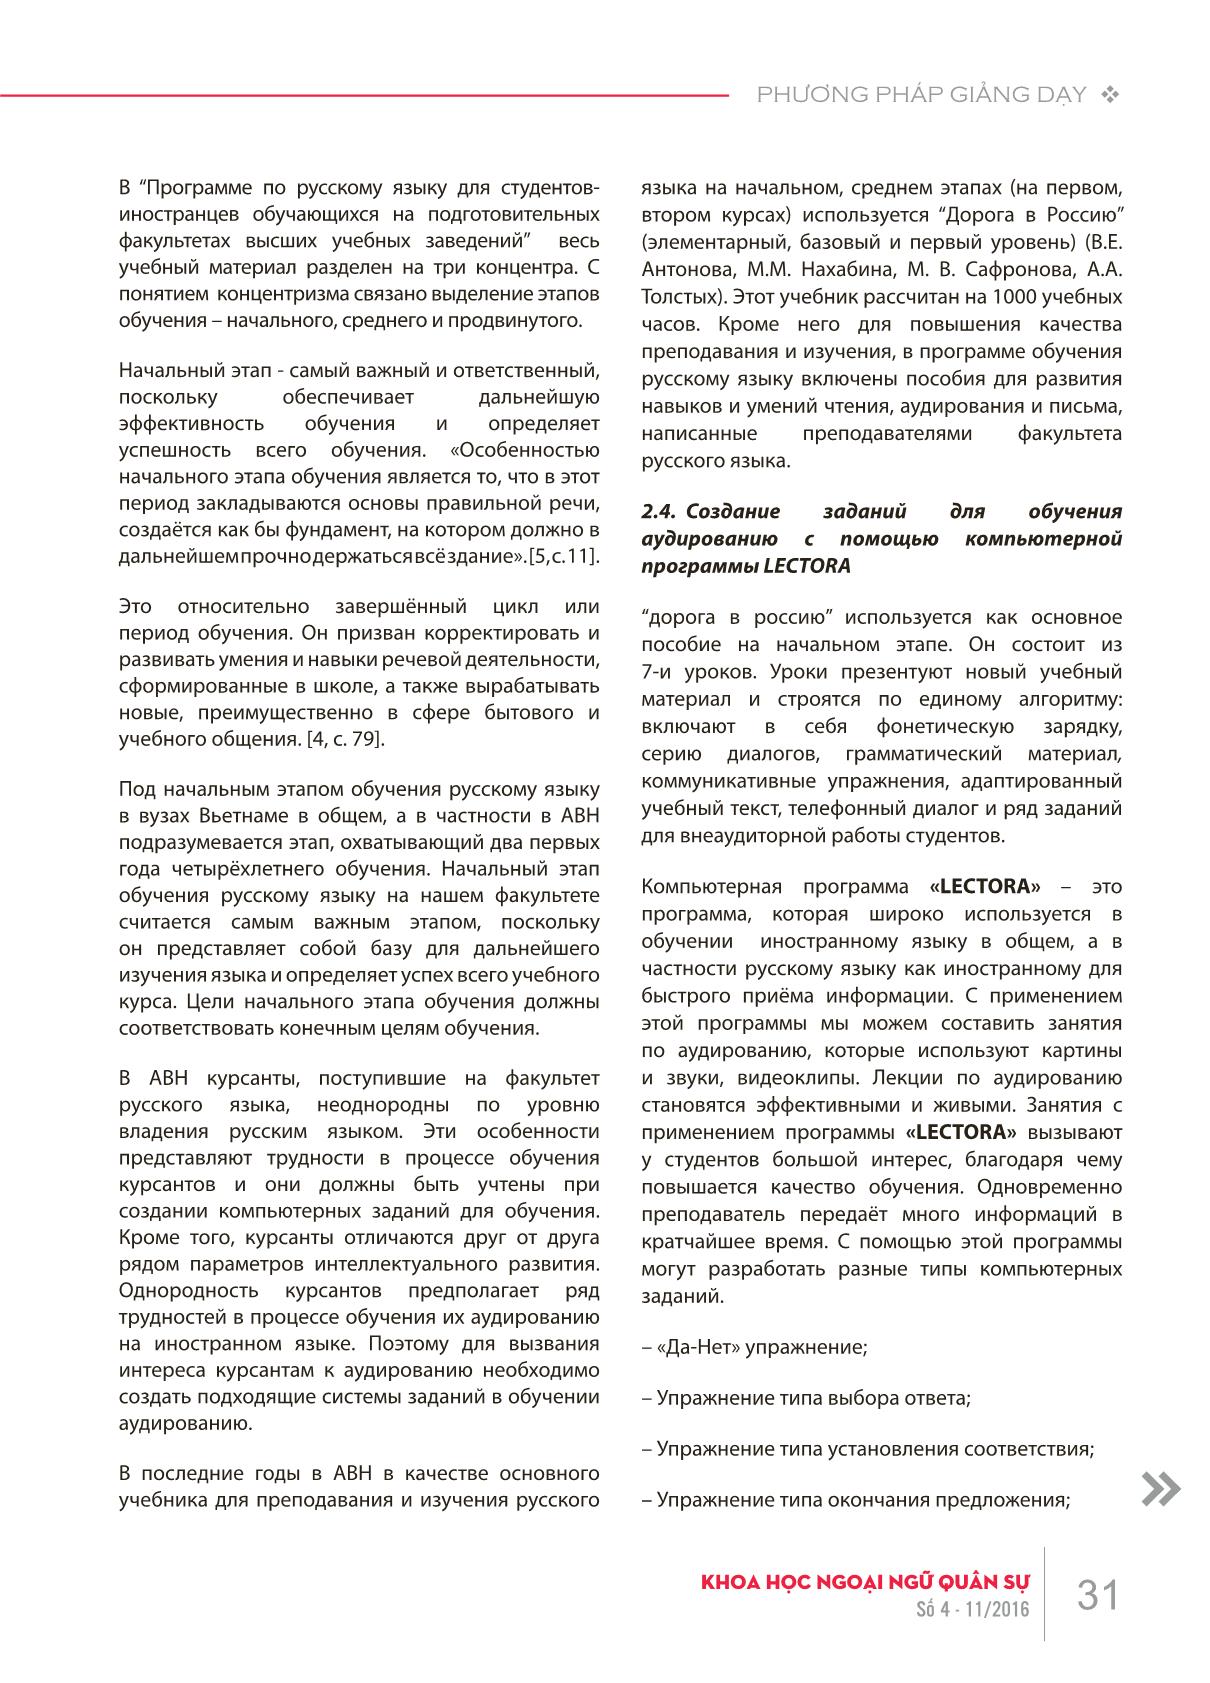 Xây dựng bài tập nghe trên máy tính cho học viên tiếng Nga giai đoạn cơ sở tại Học viện Khoa học Quân sự theo giáo trình “Đường đến nước Nga II” trang 3